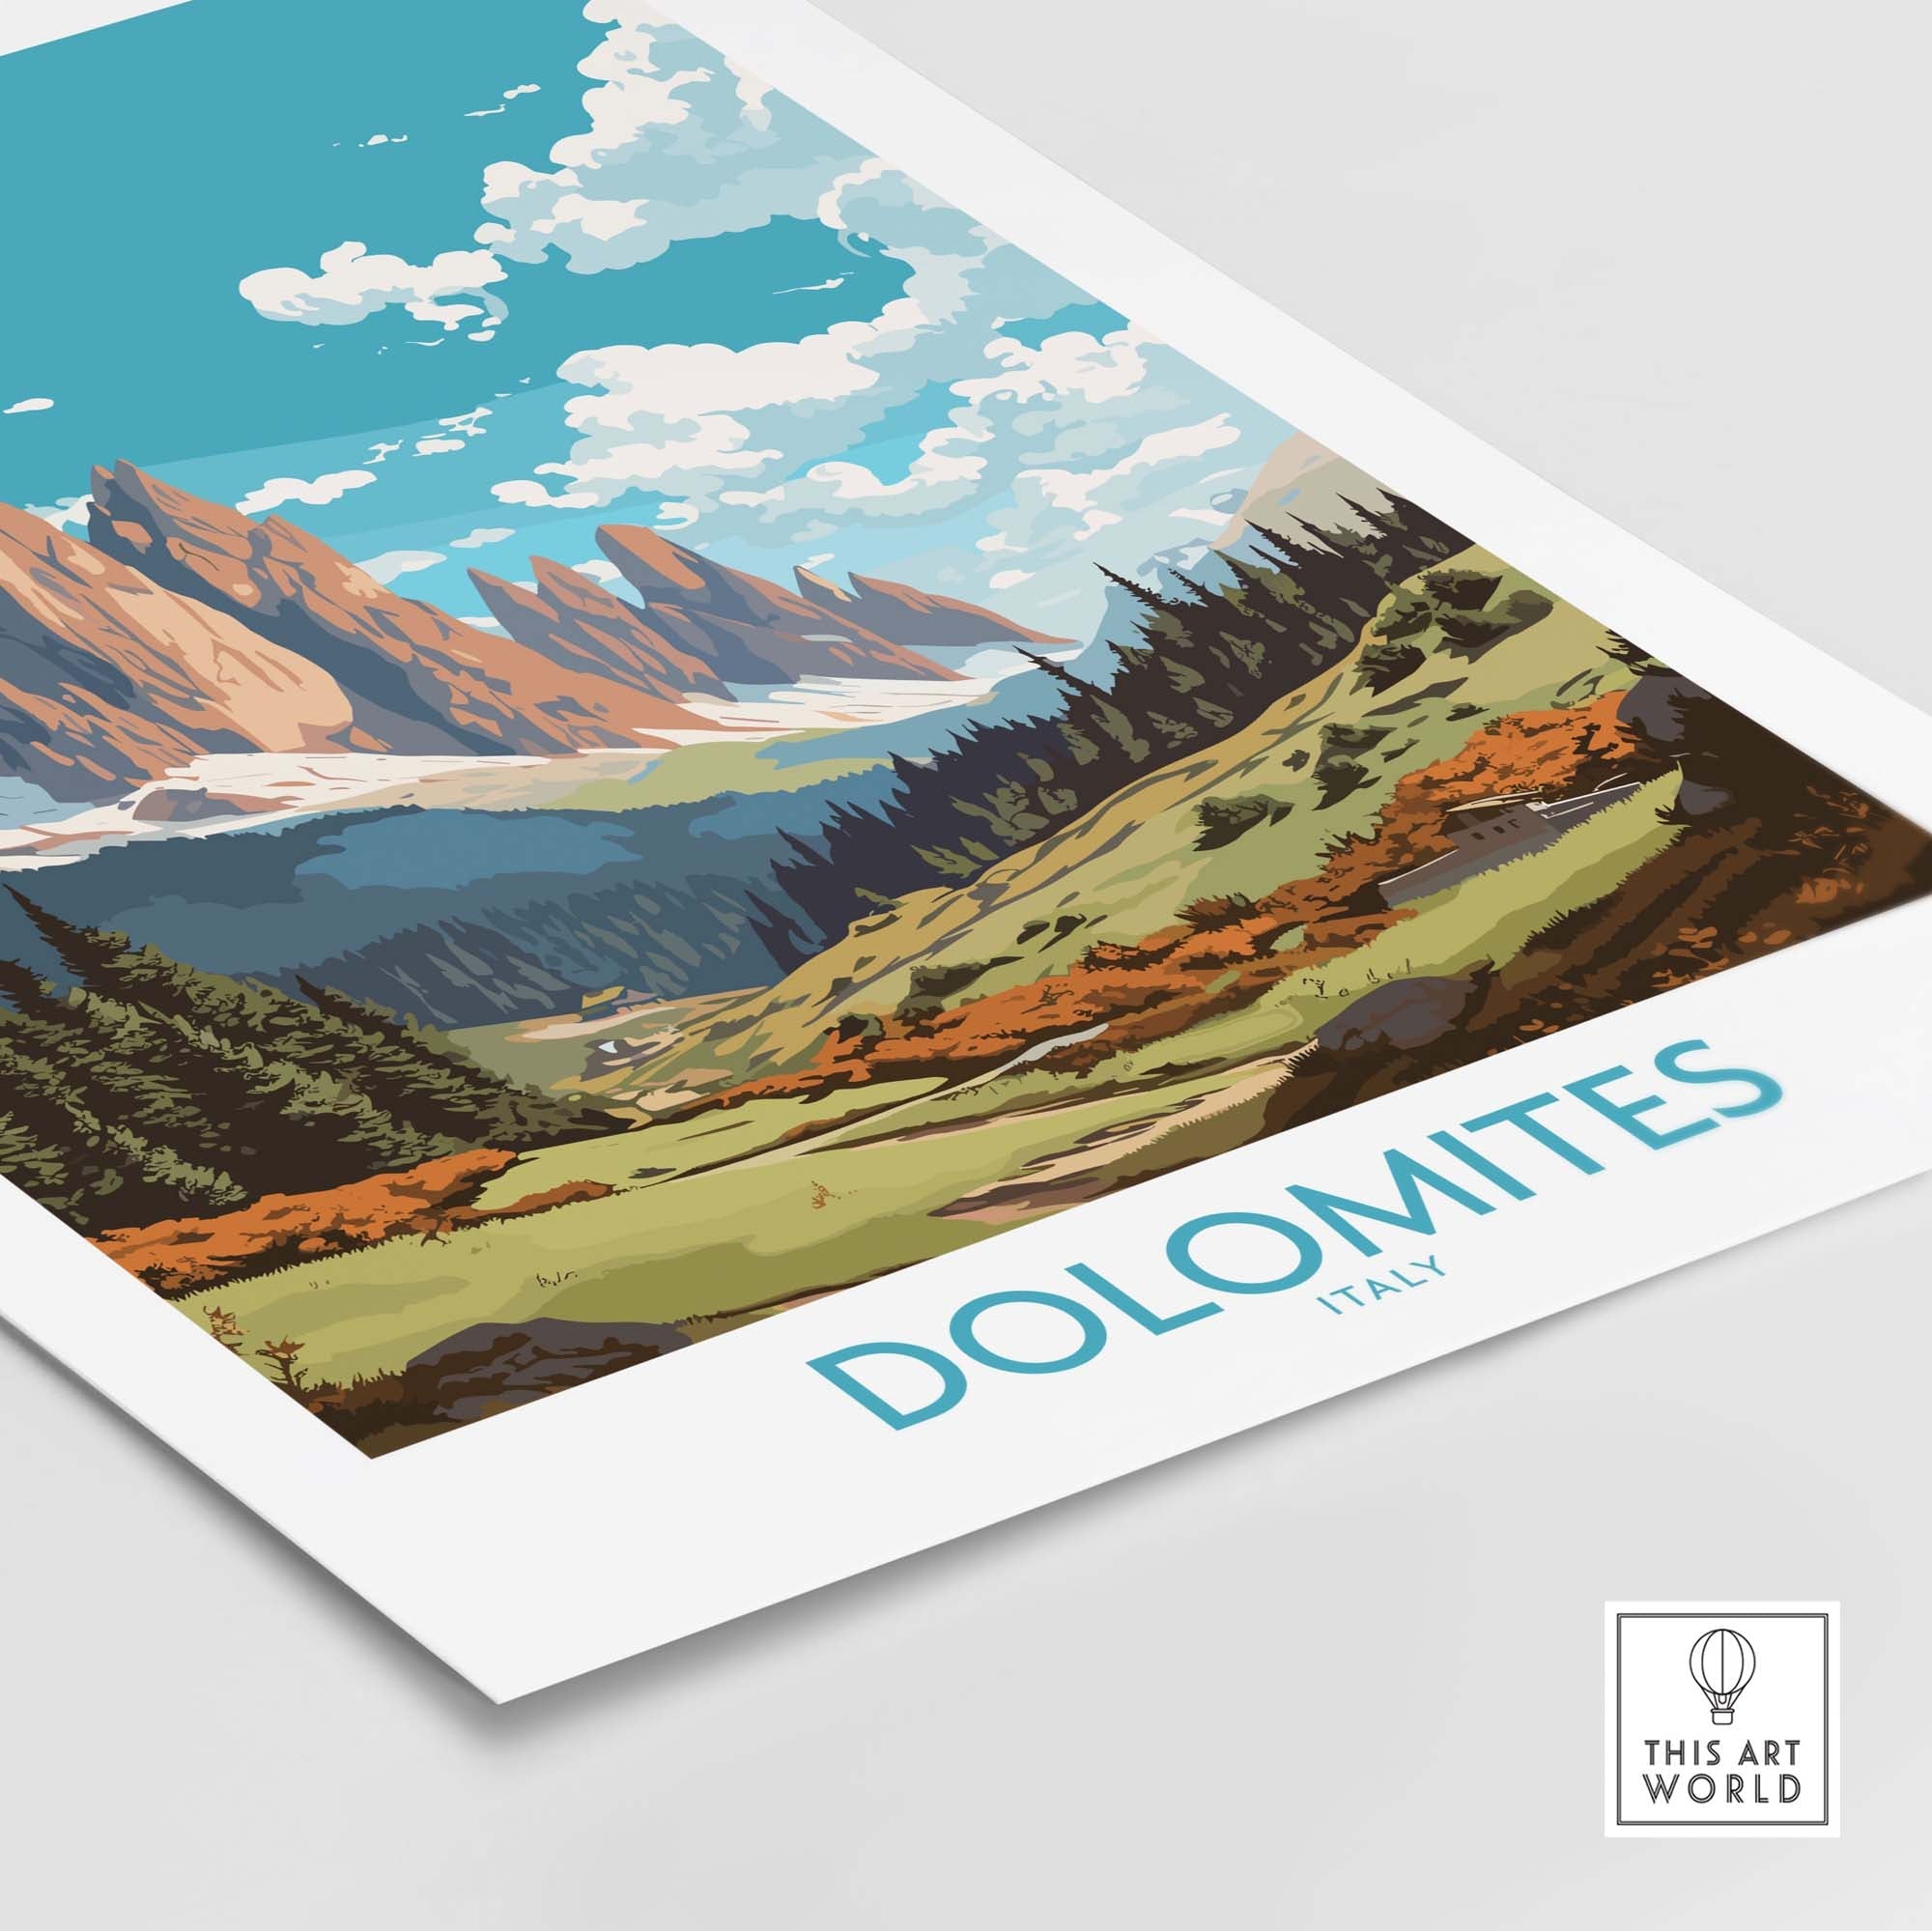 Dolomites Italy Print